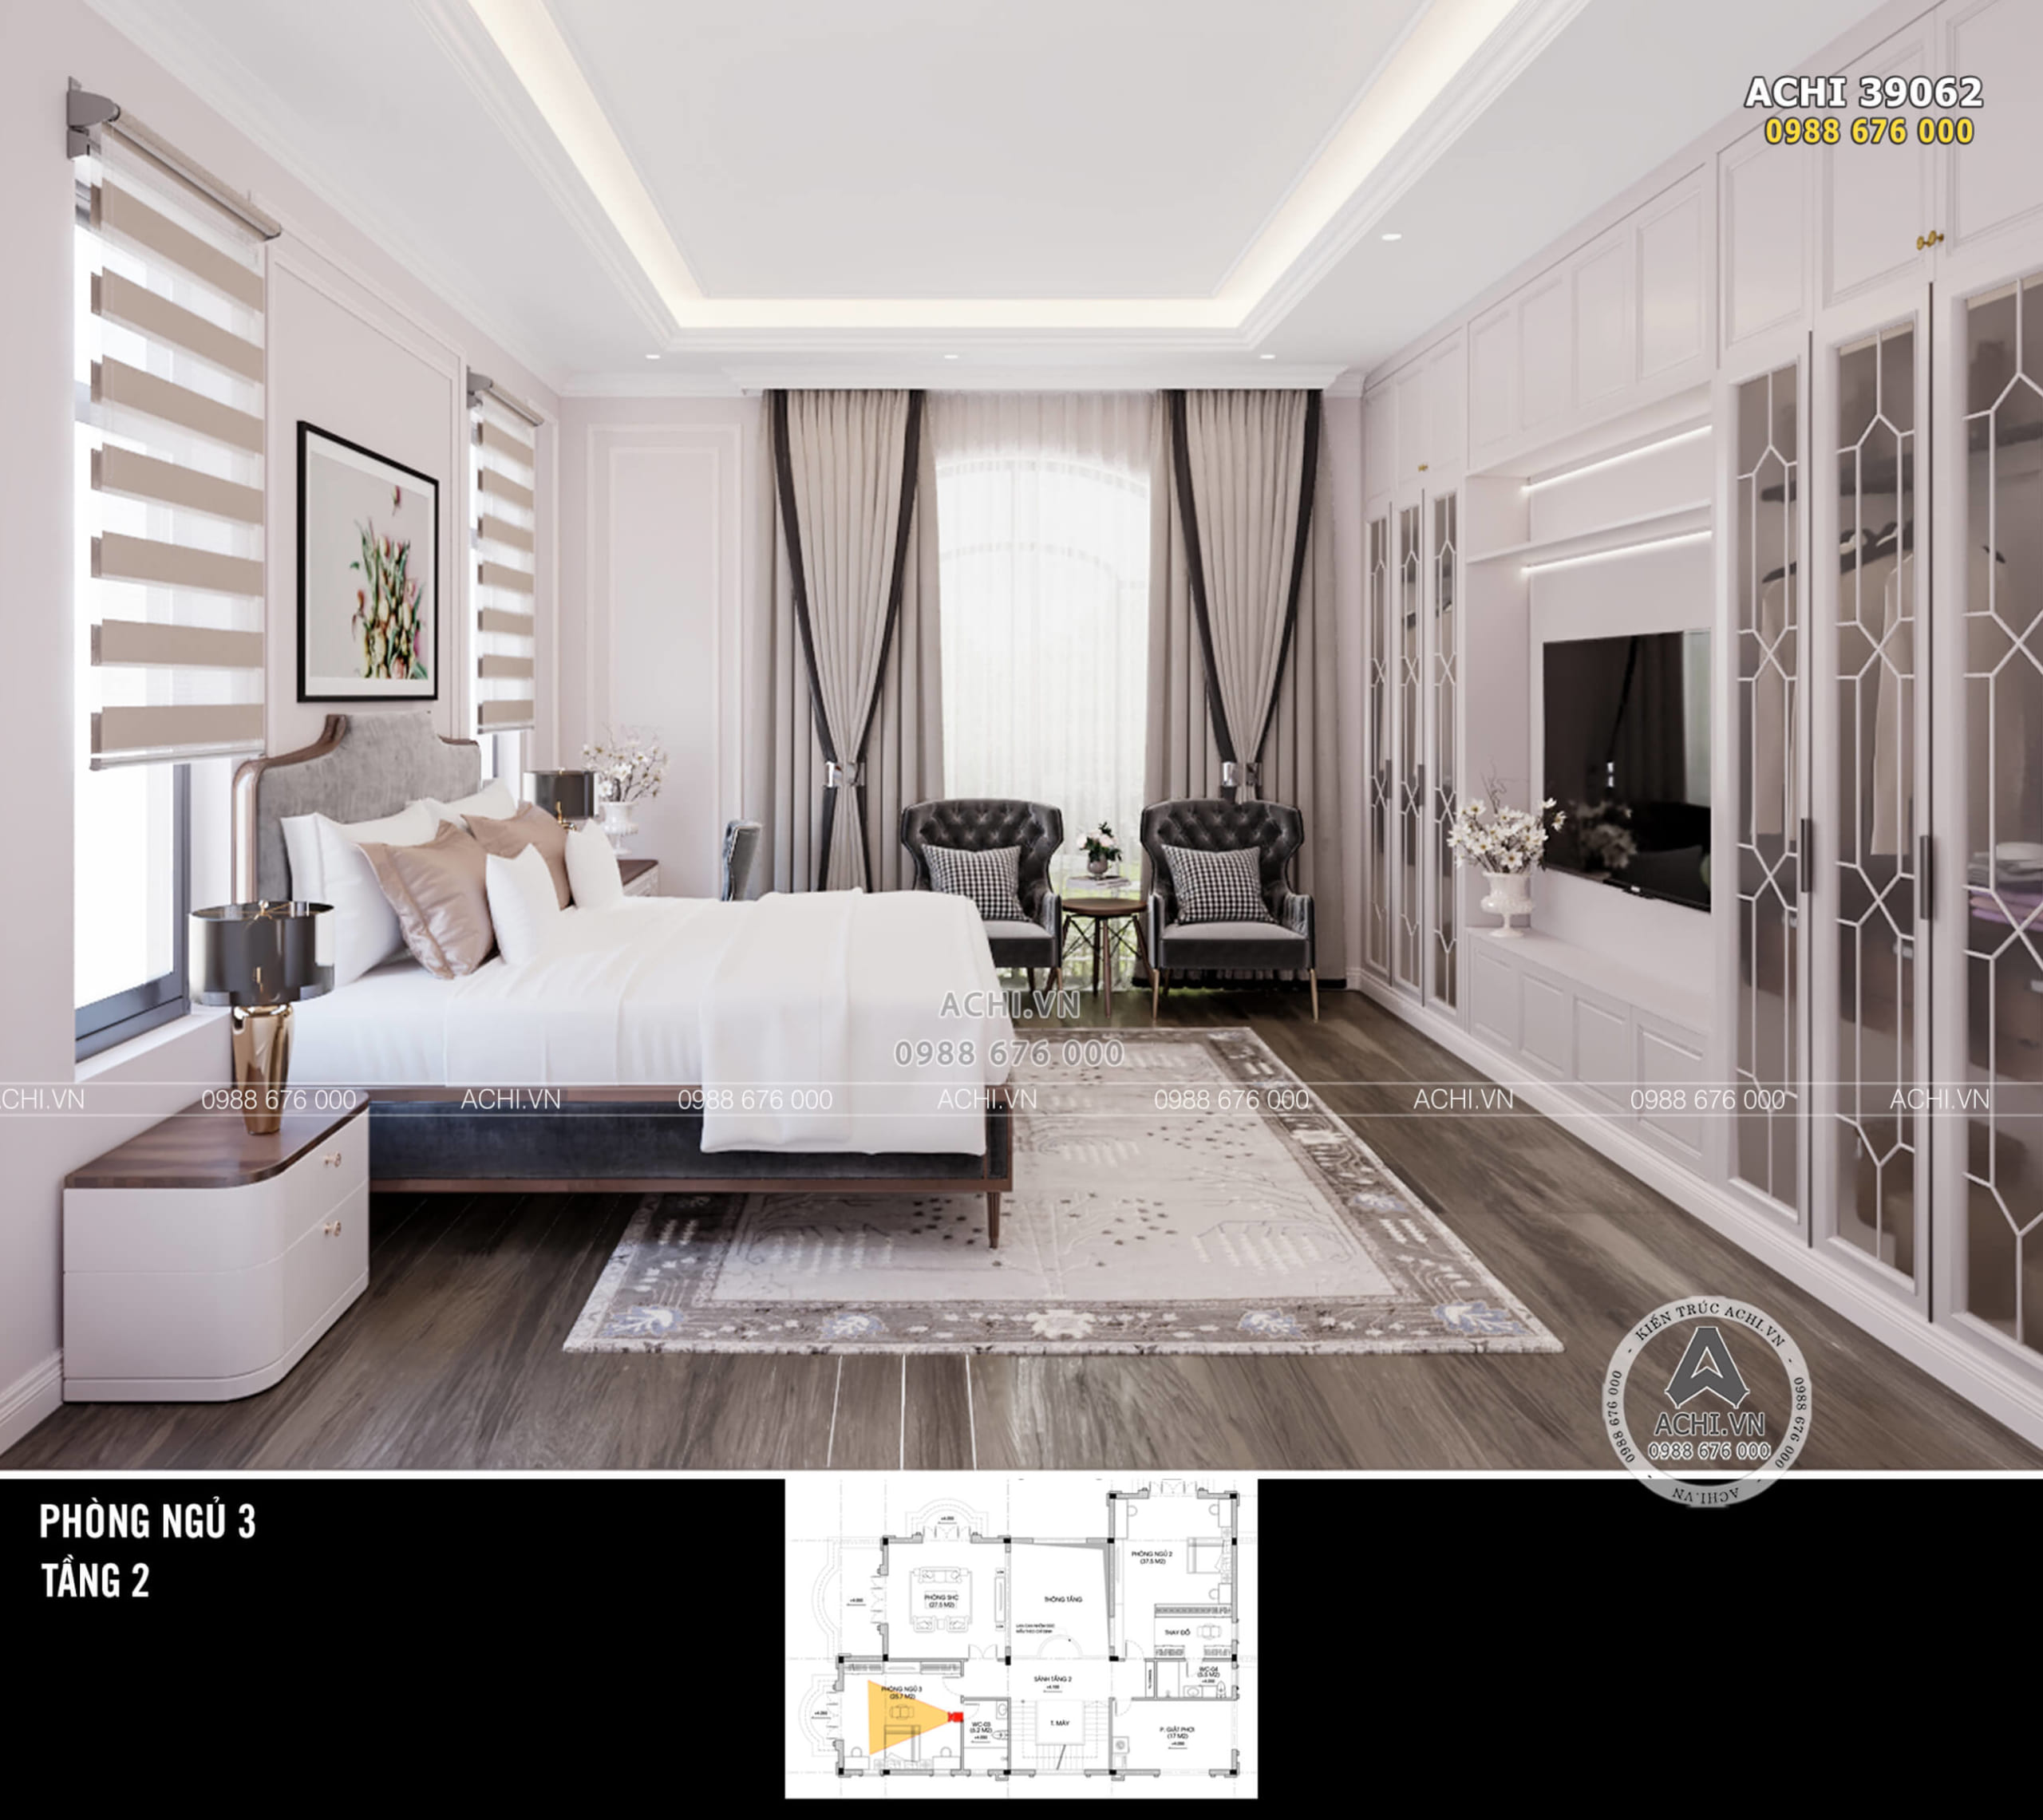 Không gian nội thất phòng ngủ tân cổ điển được thiết kế với nhiều khung cửa sổ lấy sáng